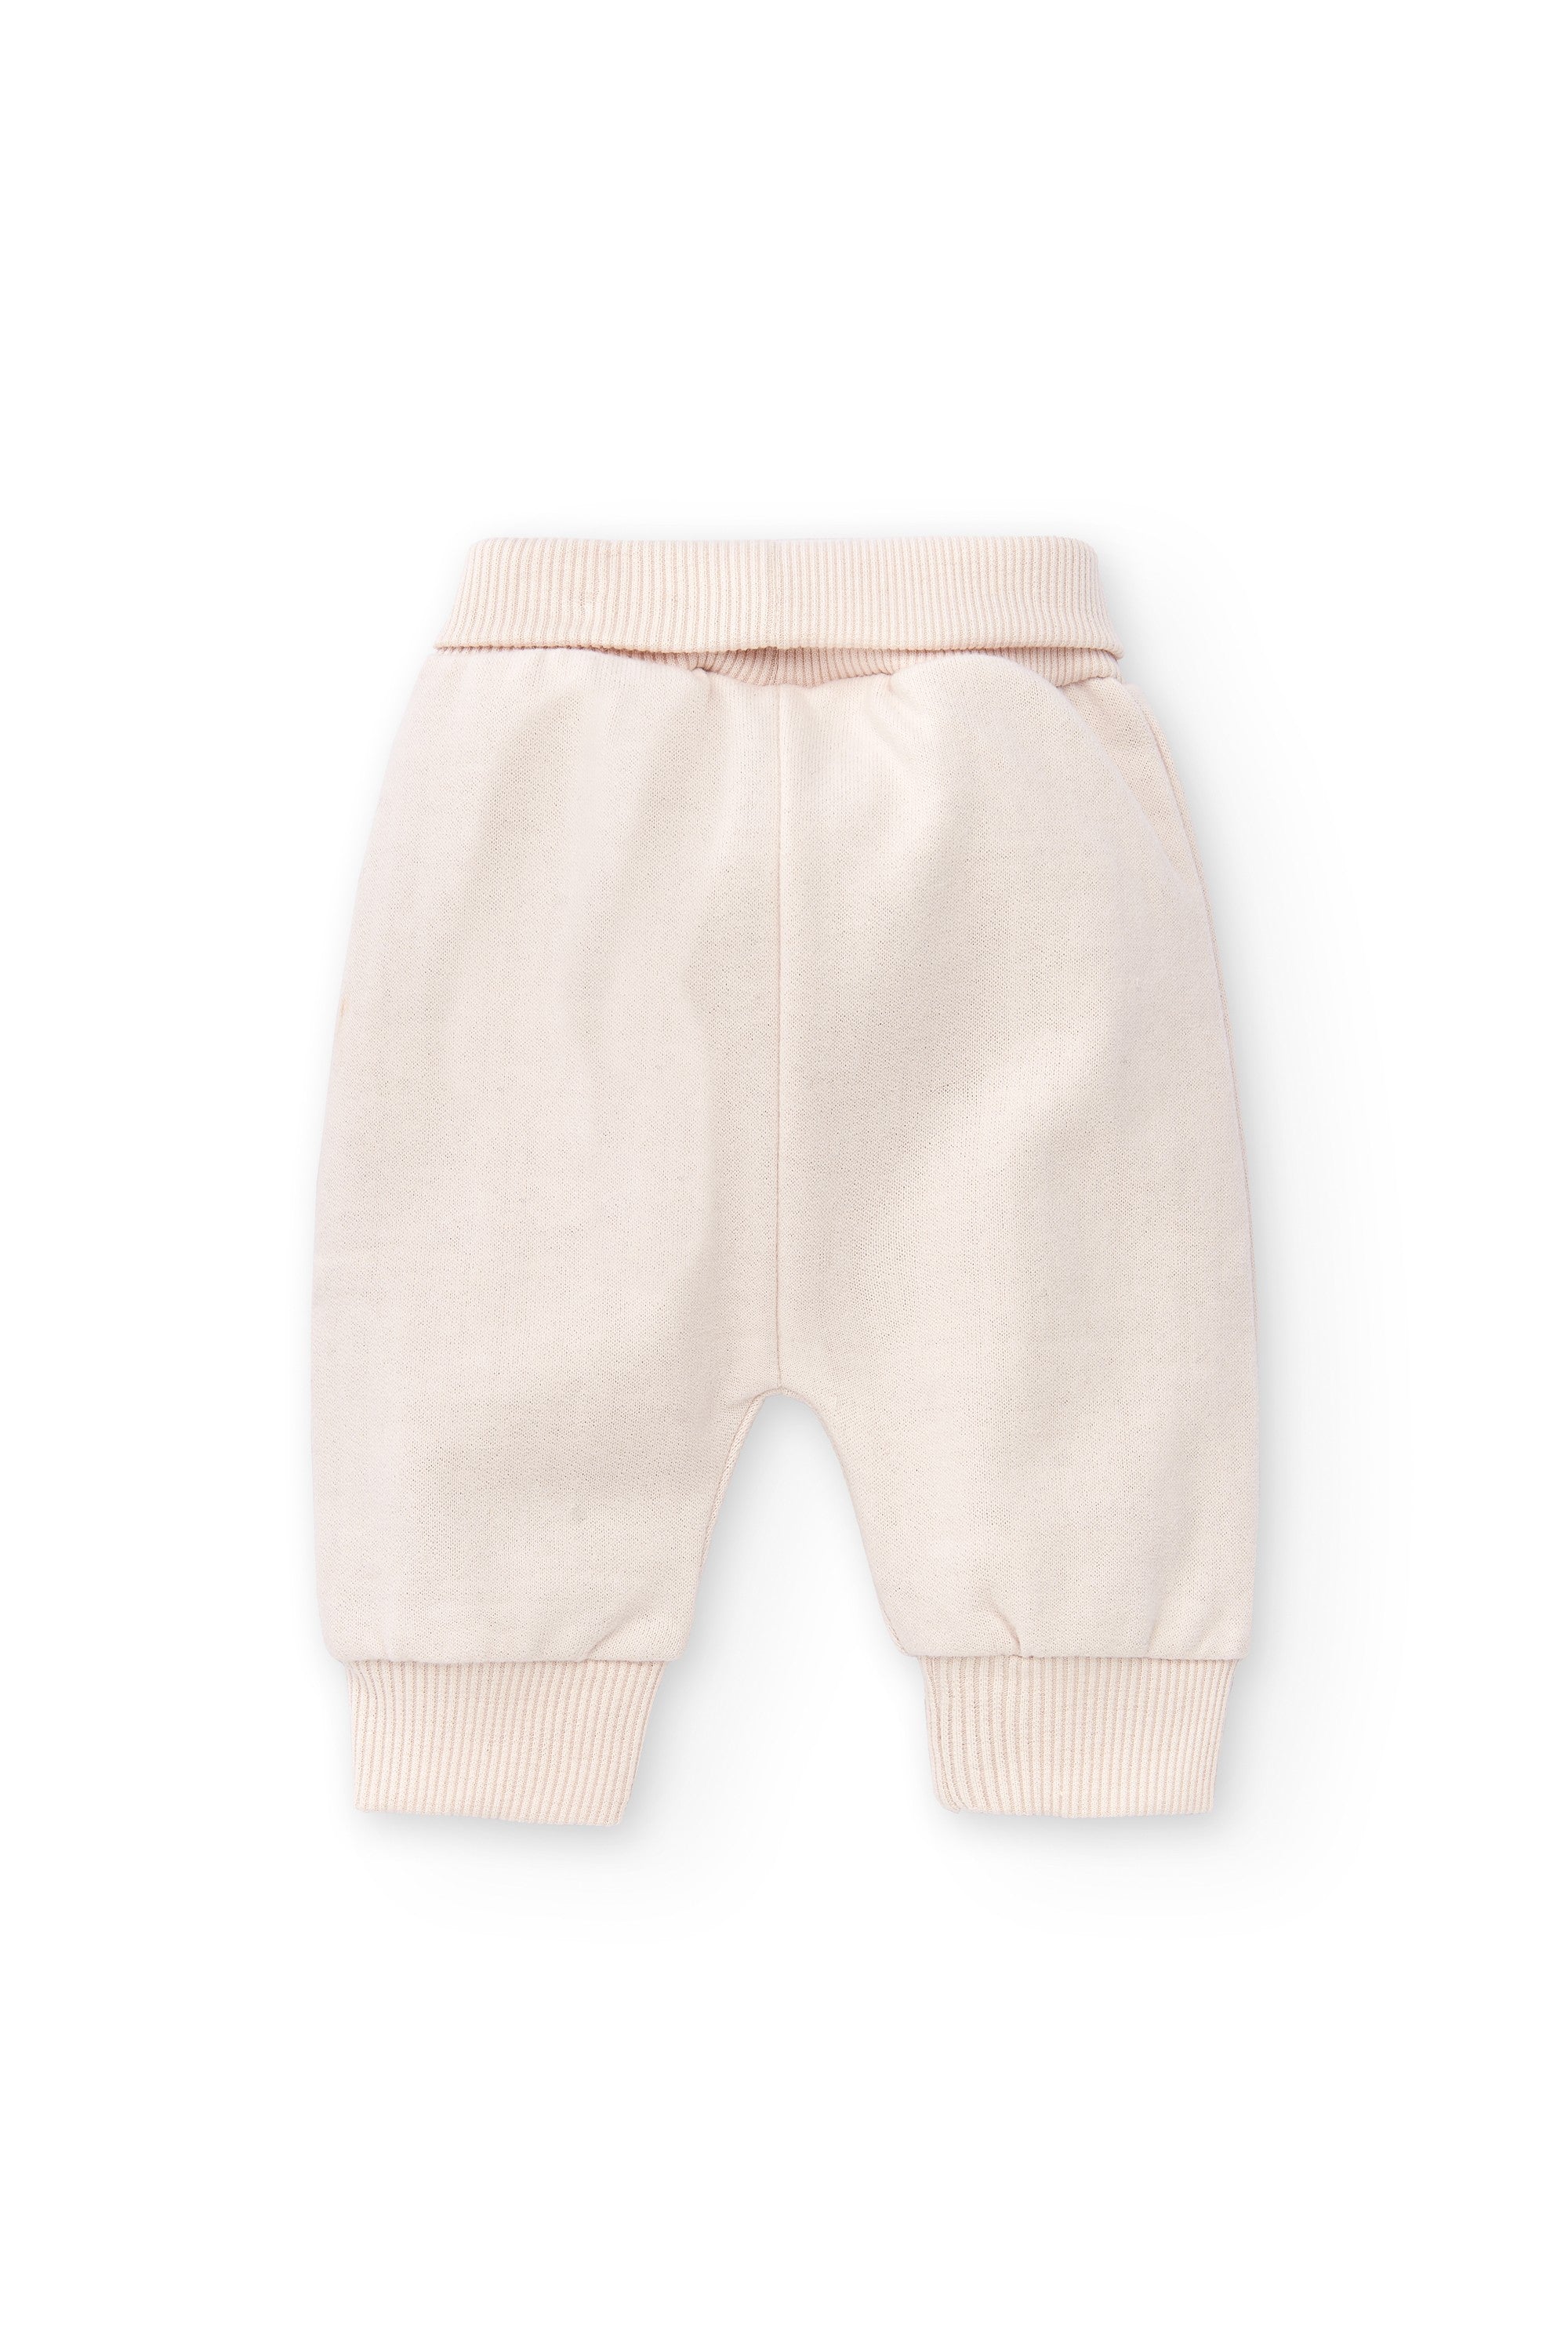 Pantalón de recién nacido en color piedra Outlet